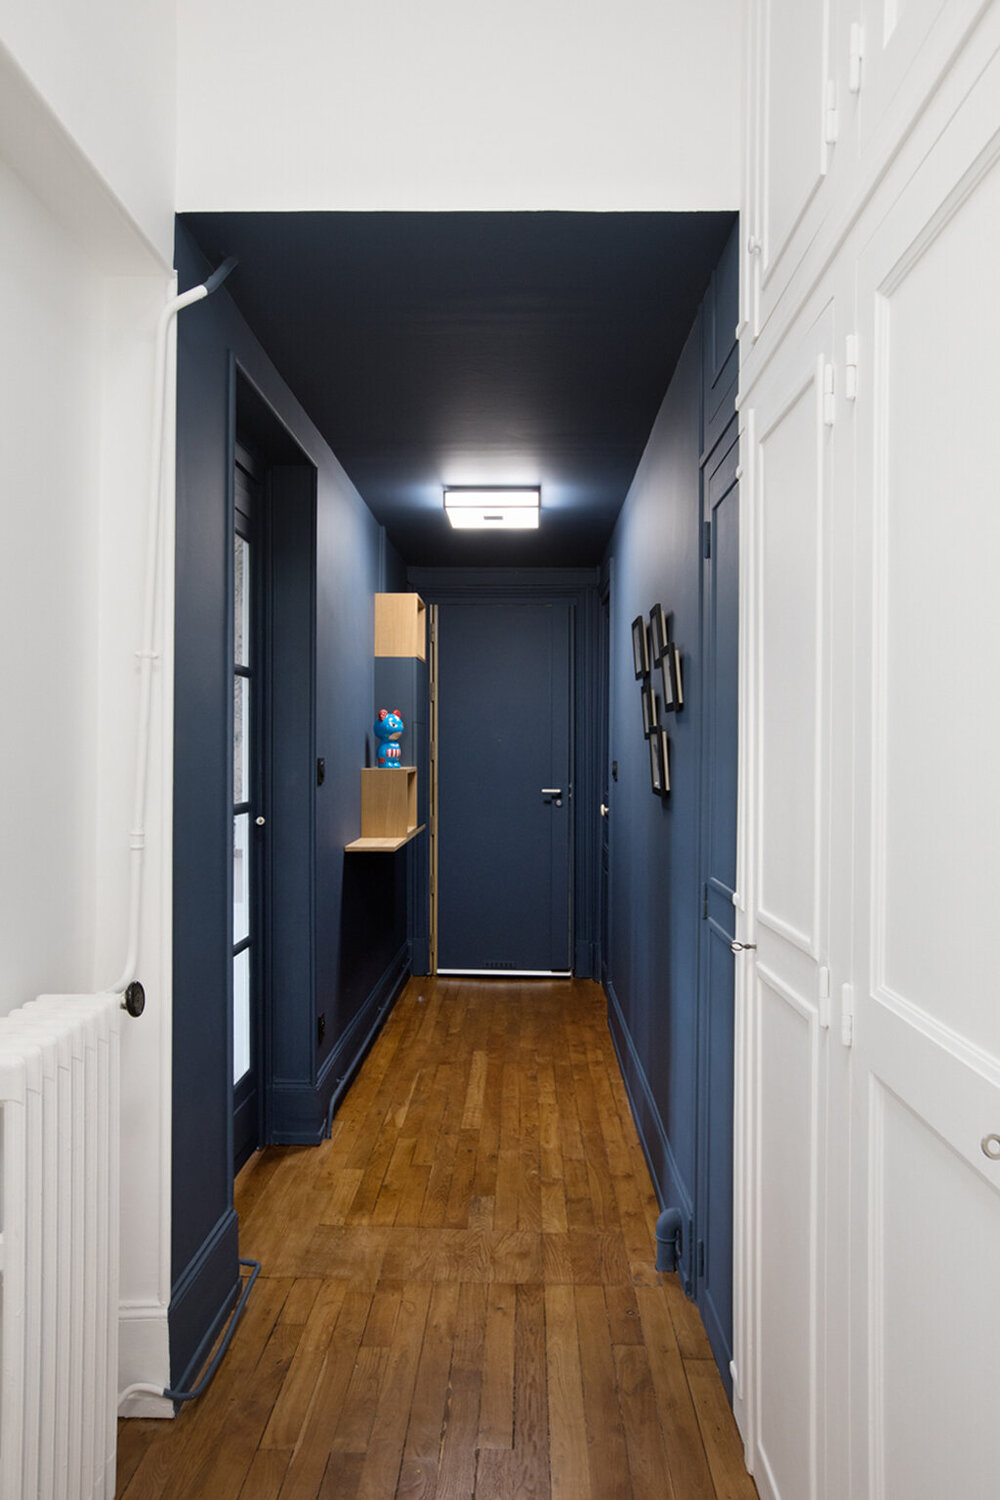 ilaria fatone - un couloir en bleu